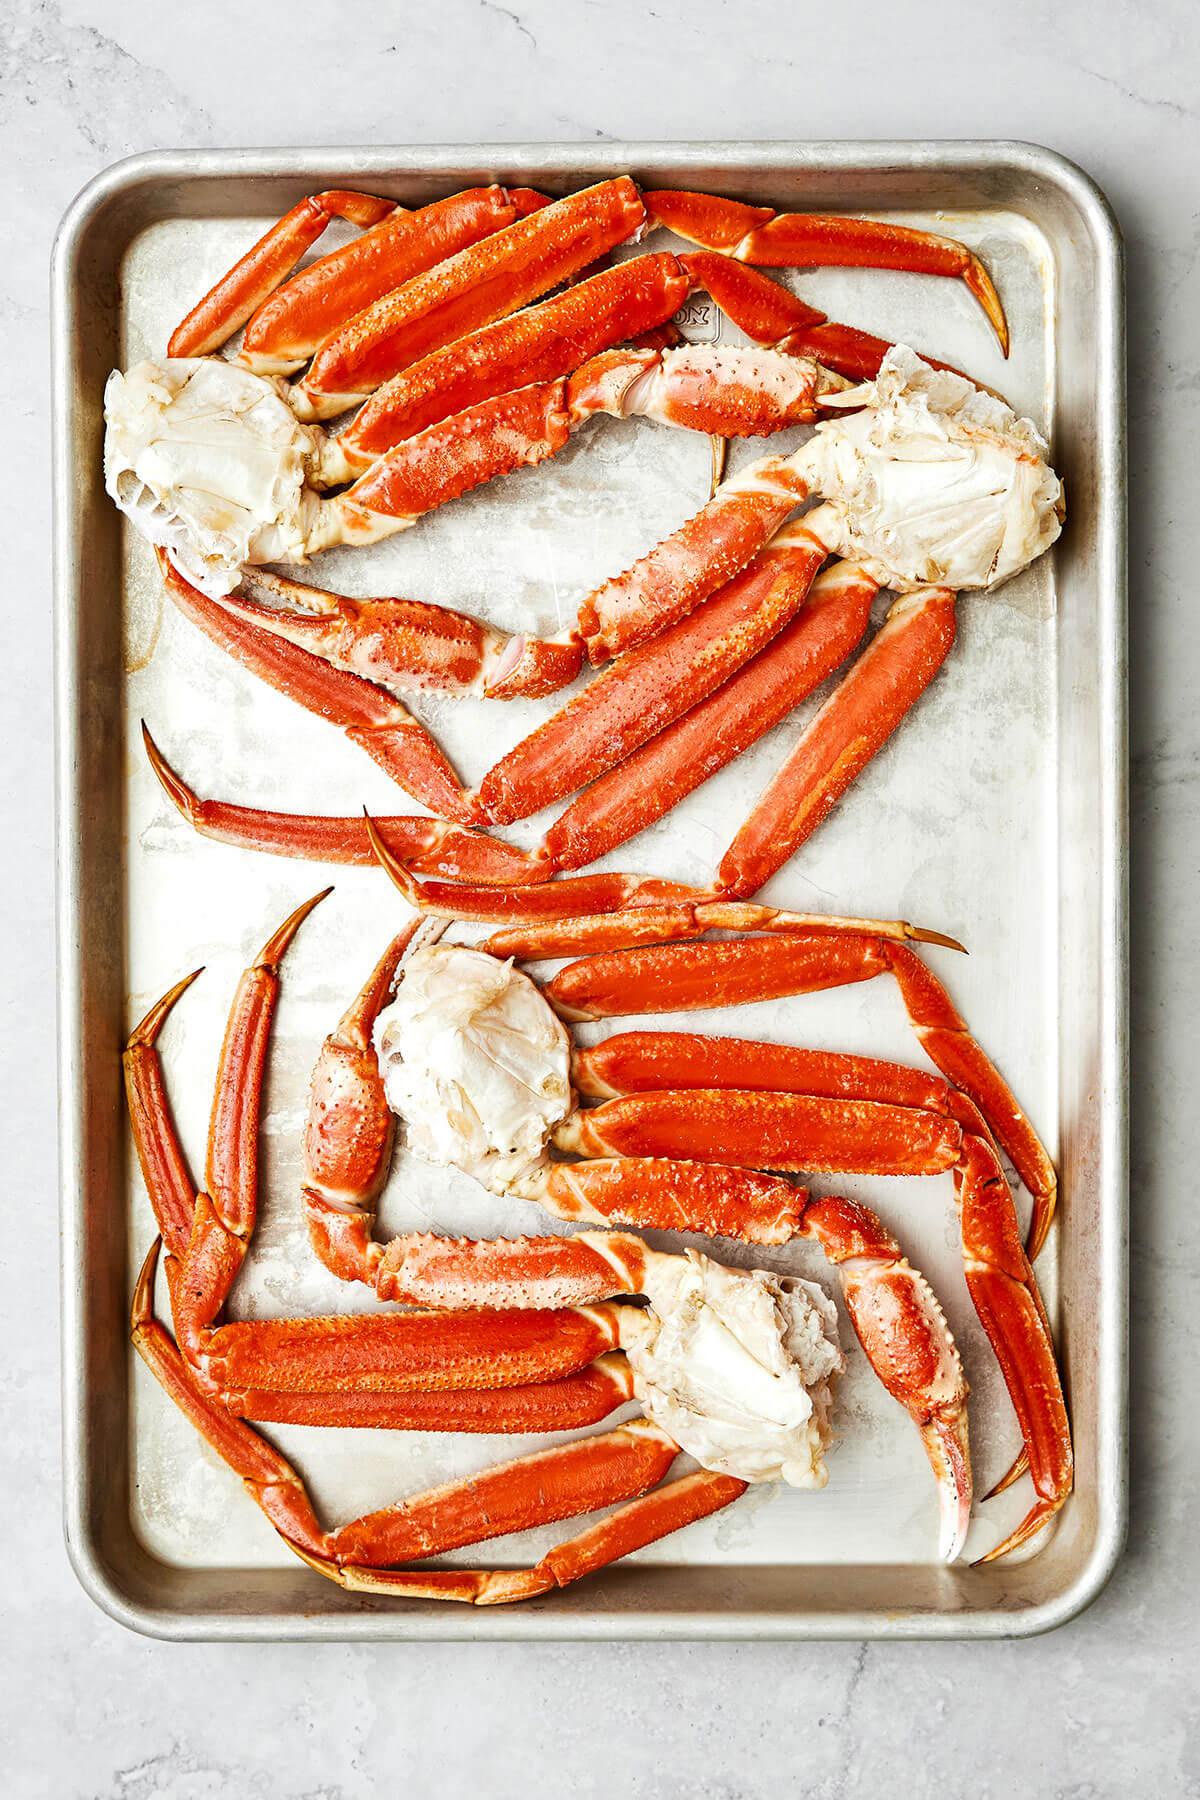 Baking crab legs